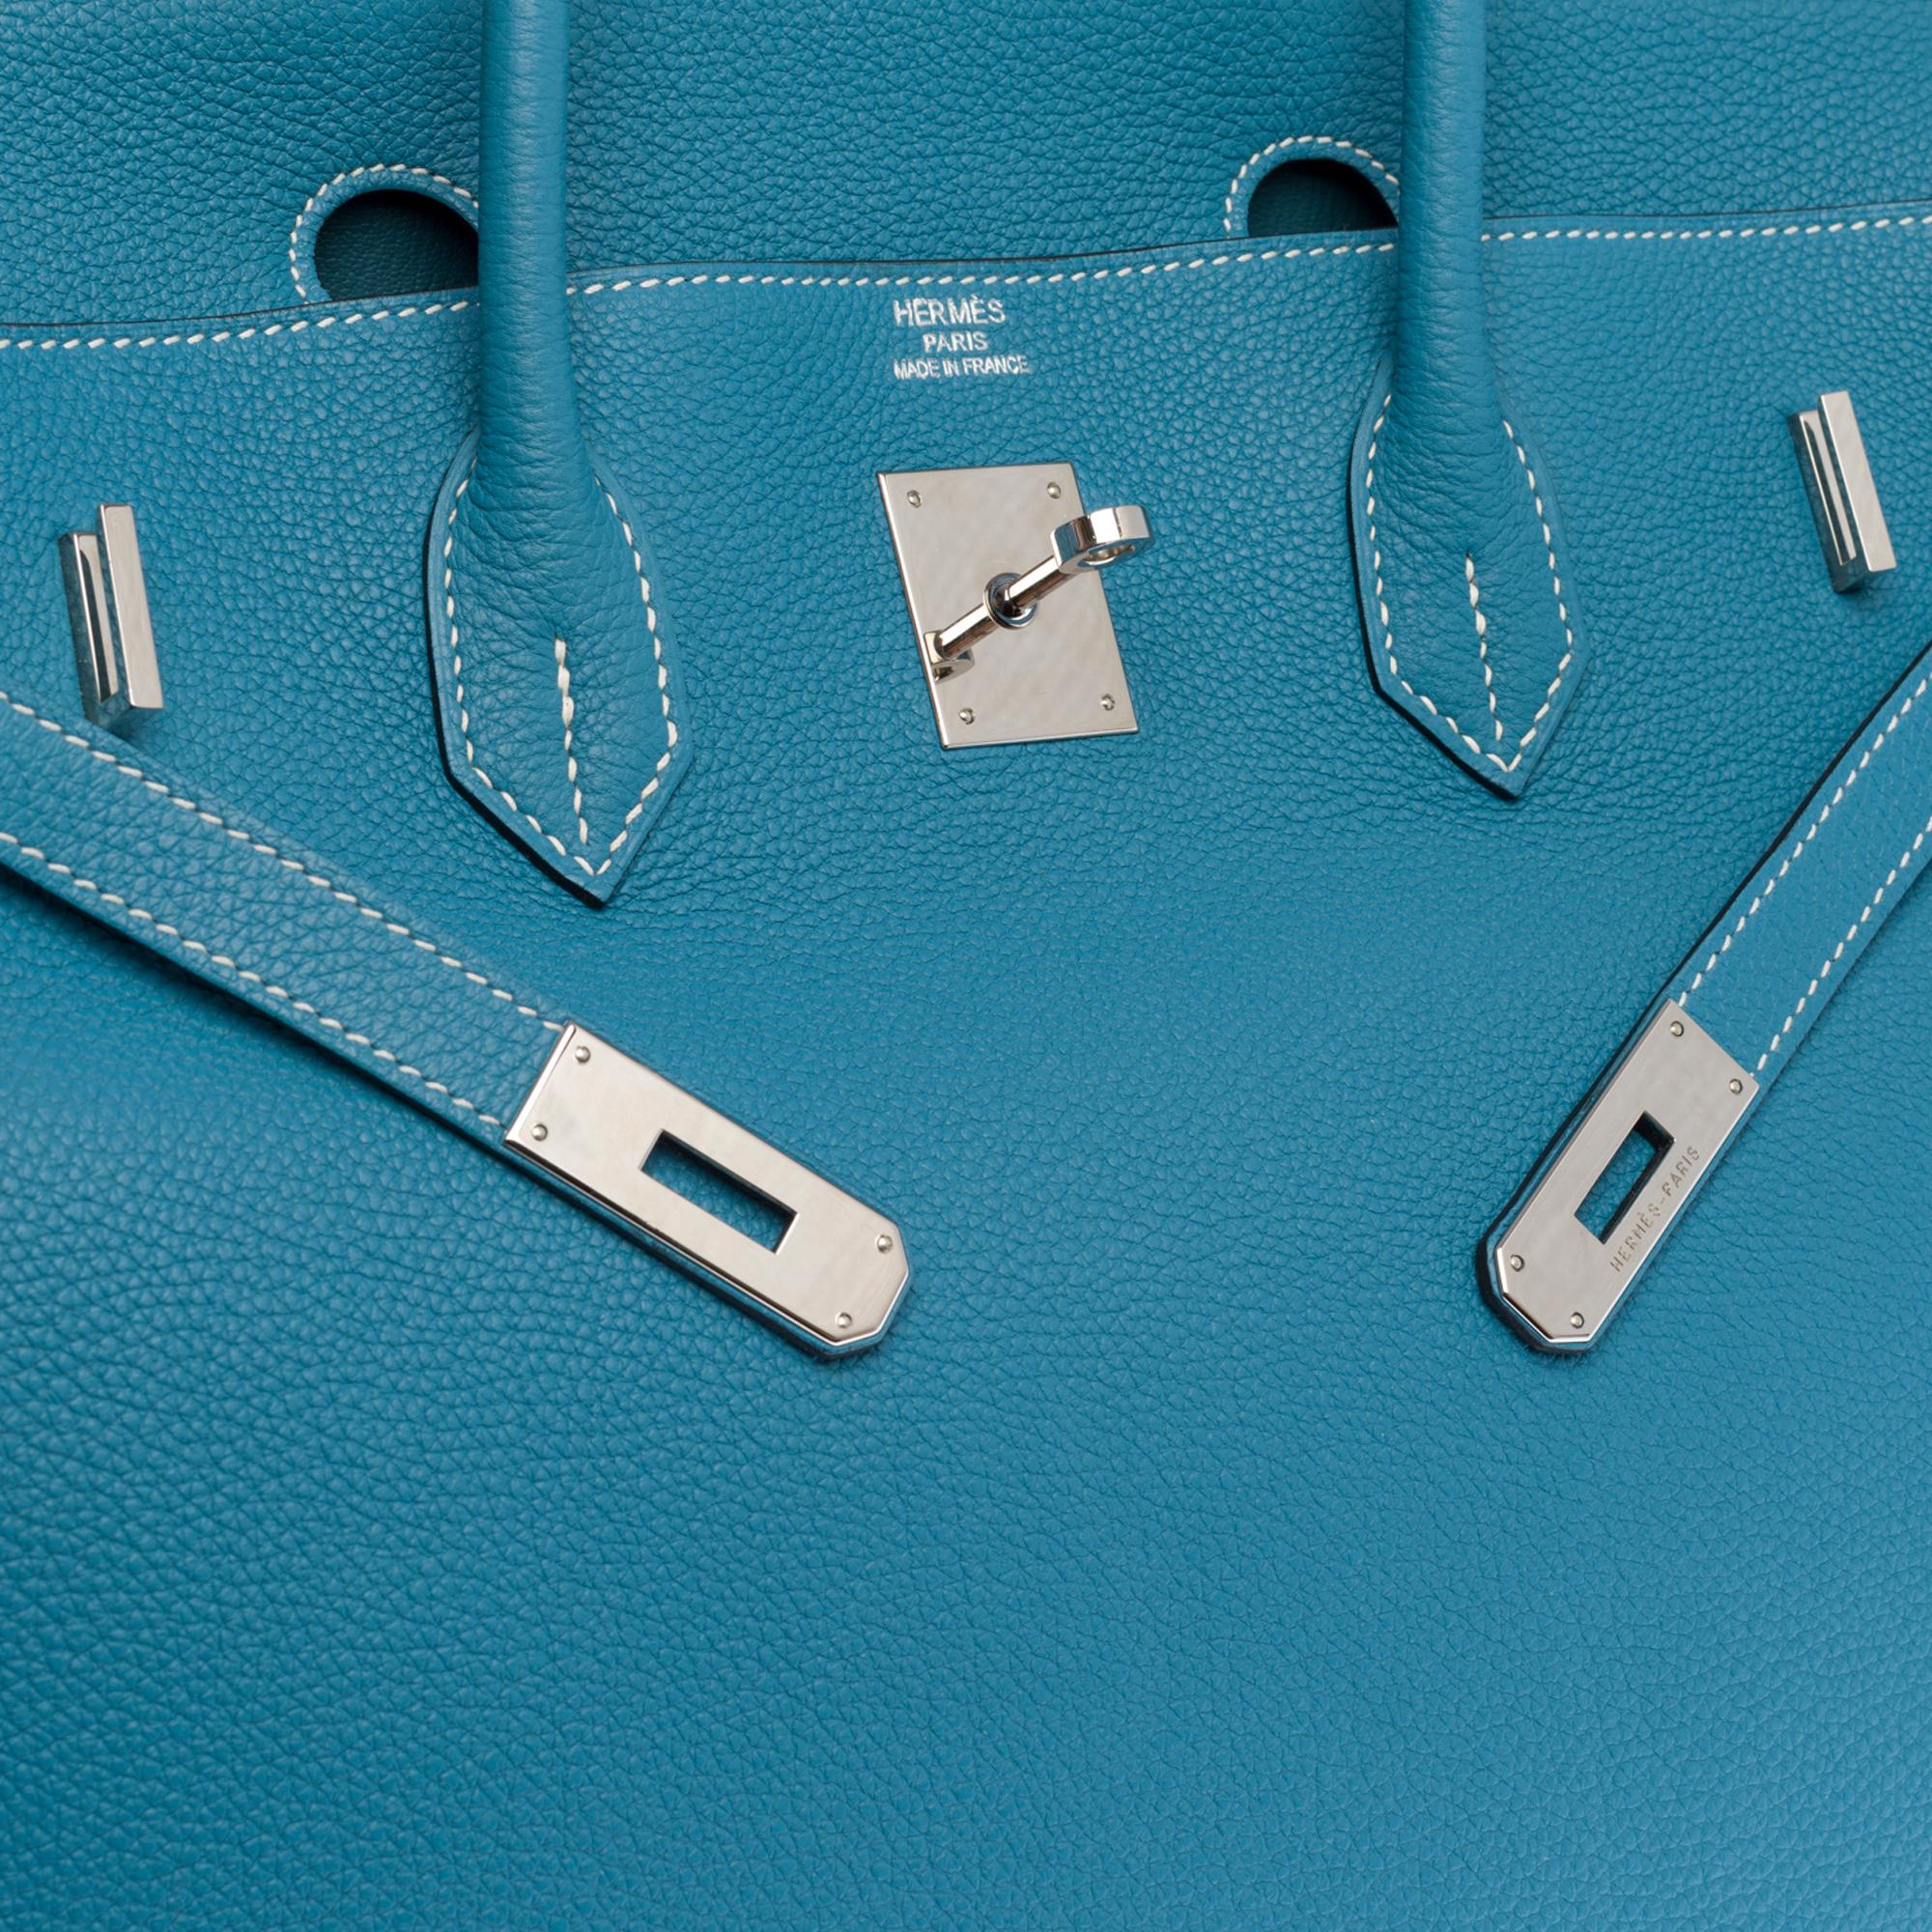 Stunning Hermes Birkin 40cm handbag in Blue Pétrole Togo leather, SHW 1